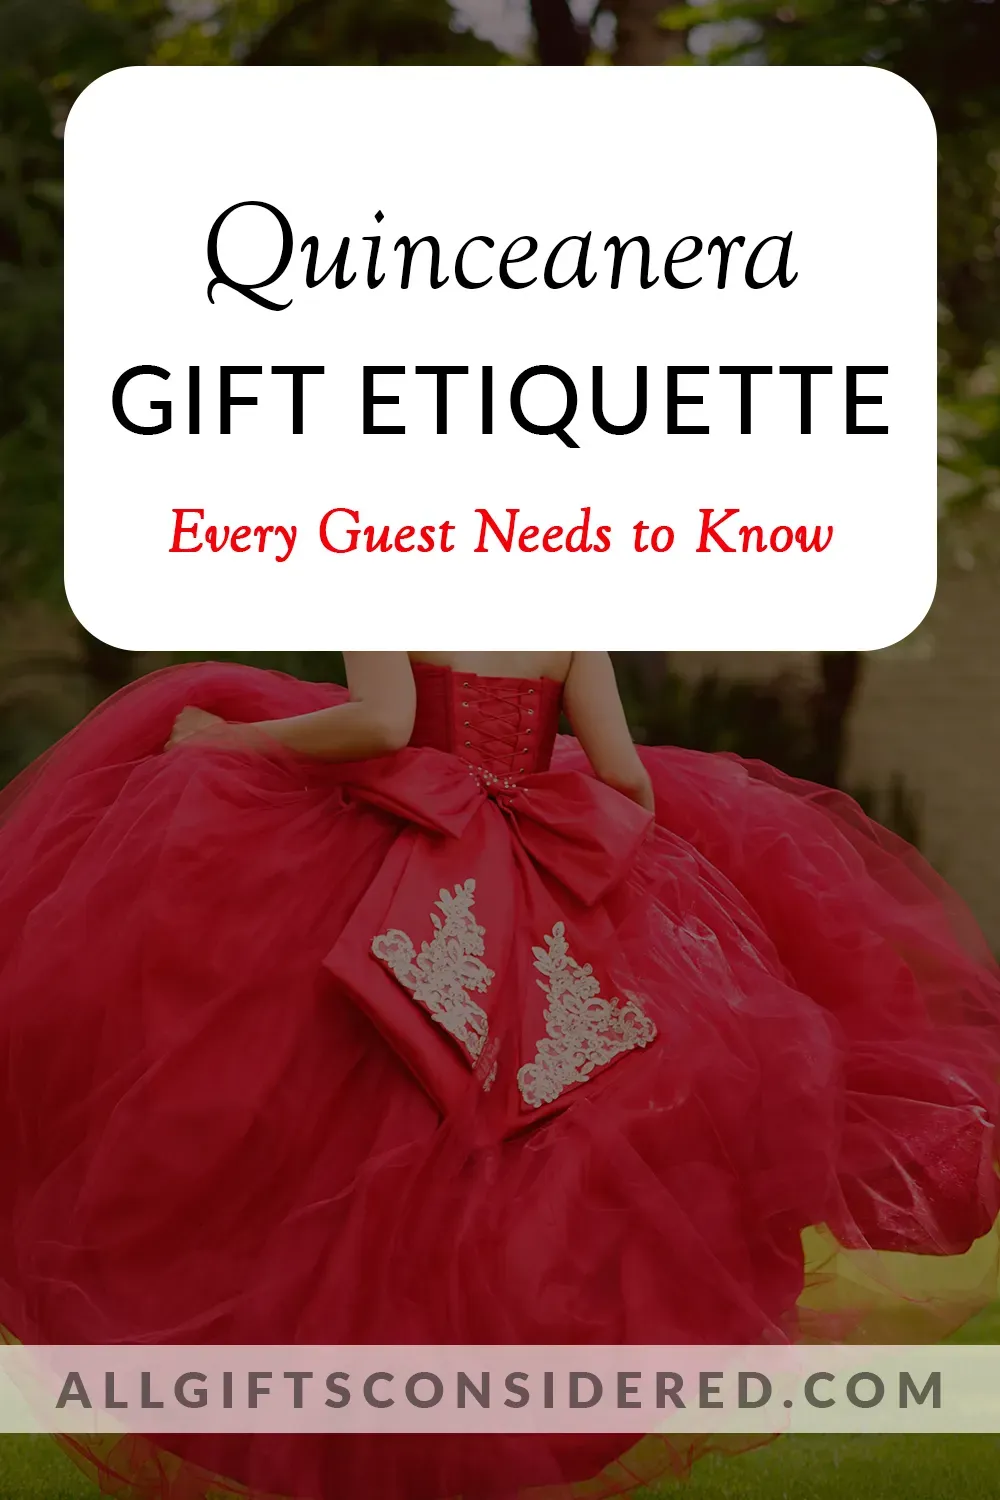 Quinceanera gift etiquette - feature image